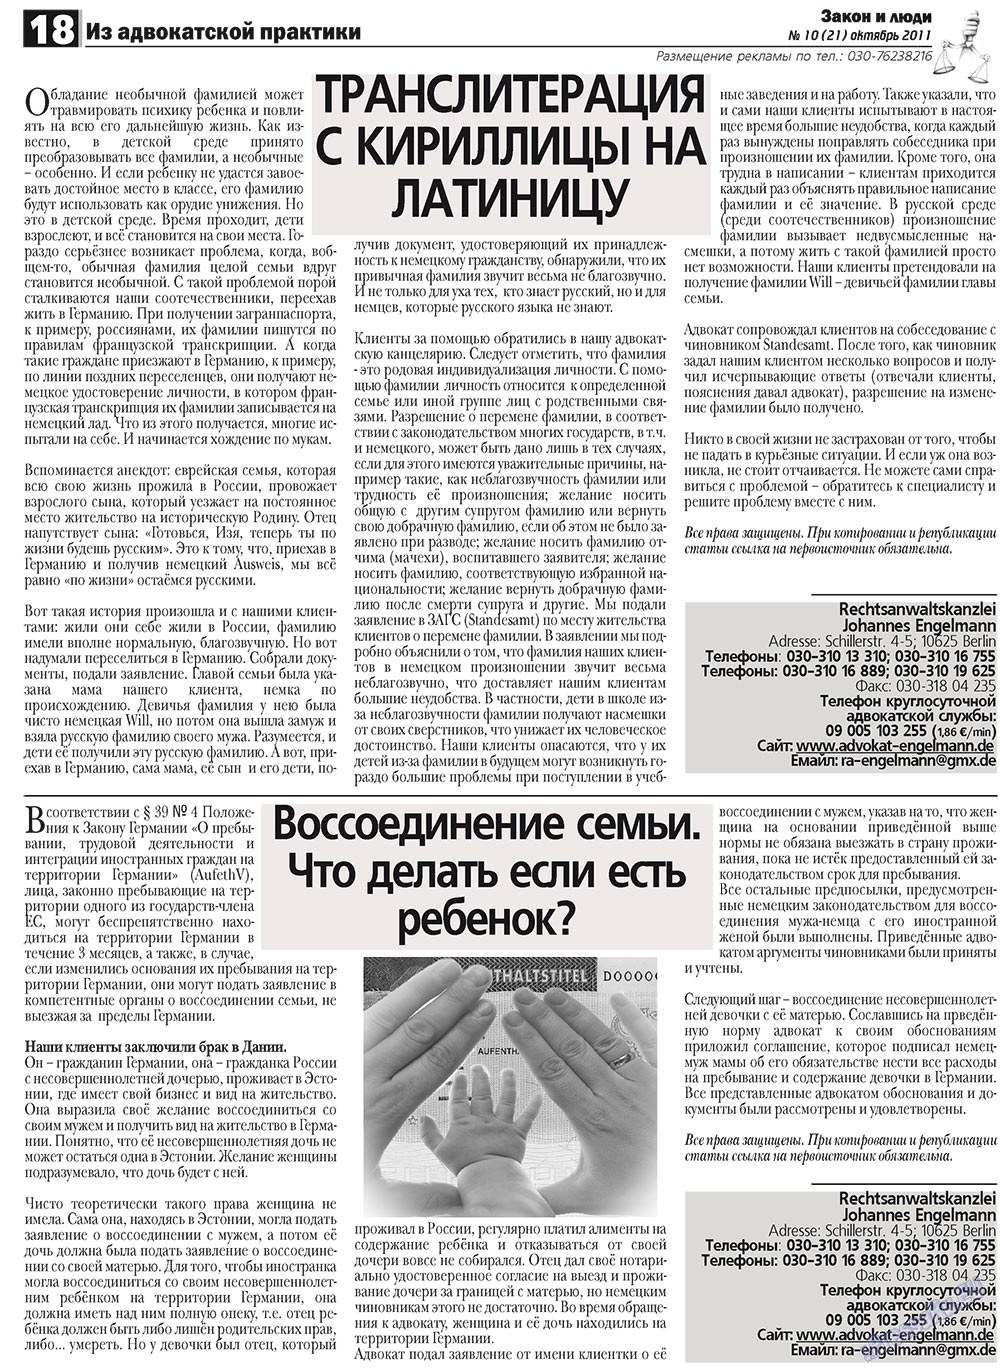 Закон и люди, газета. 2011 №10 стр.18